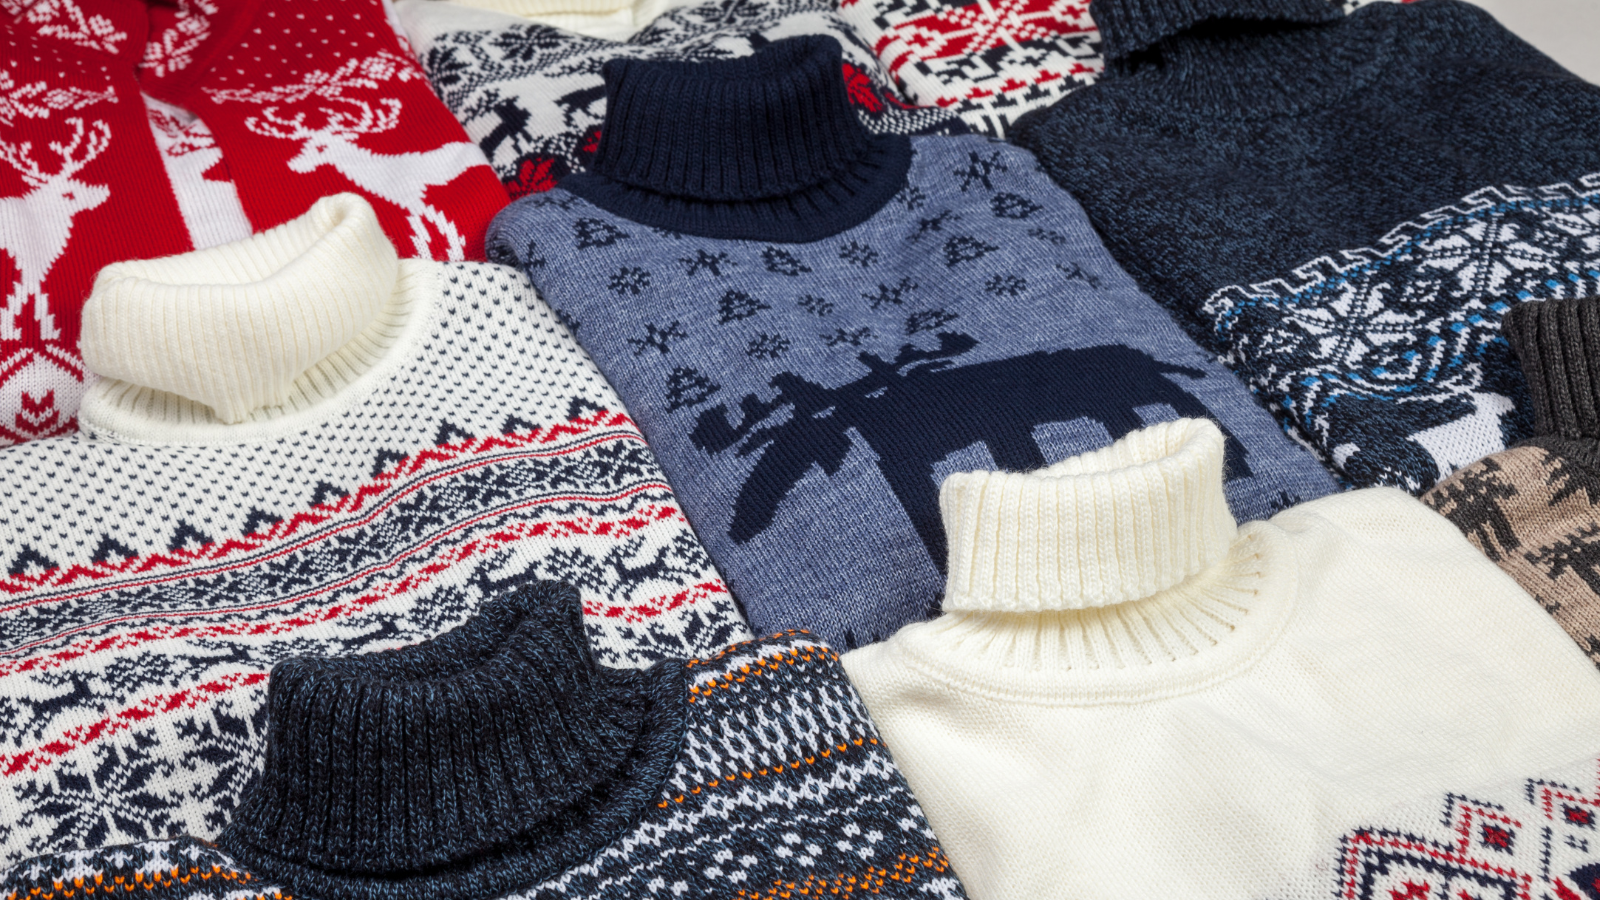 Norwegian Knitwear - gifts from coach rental in Norway